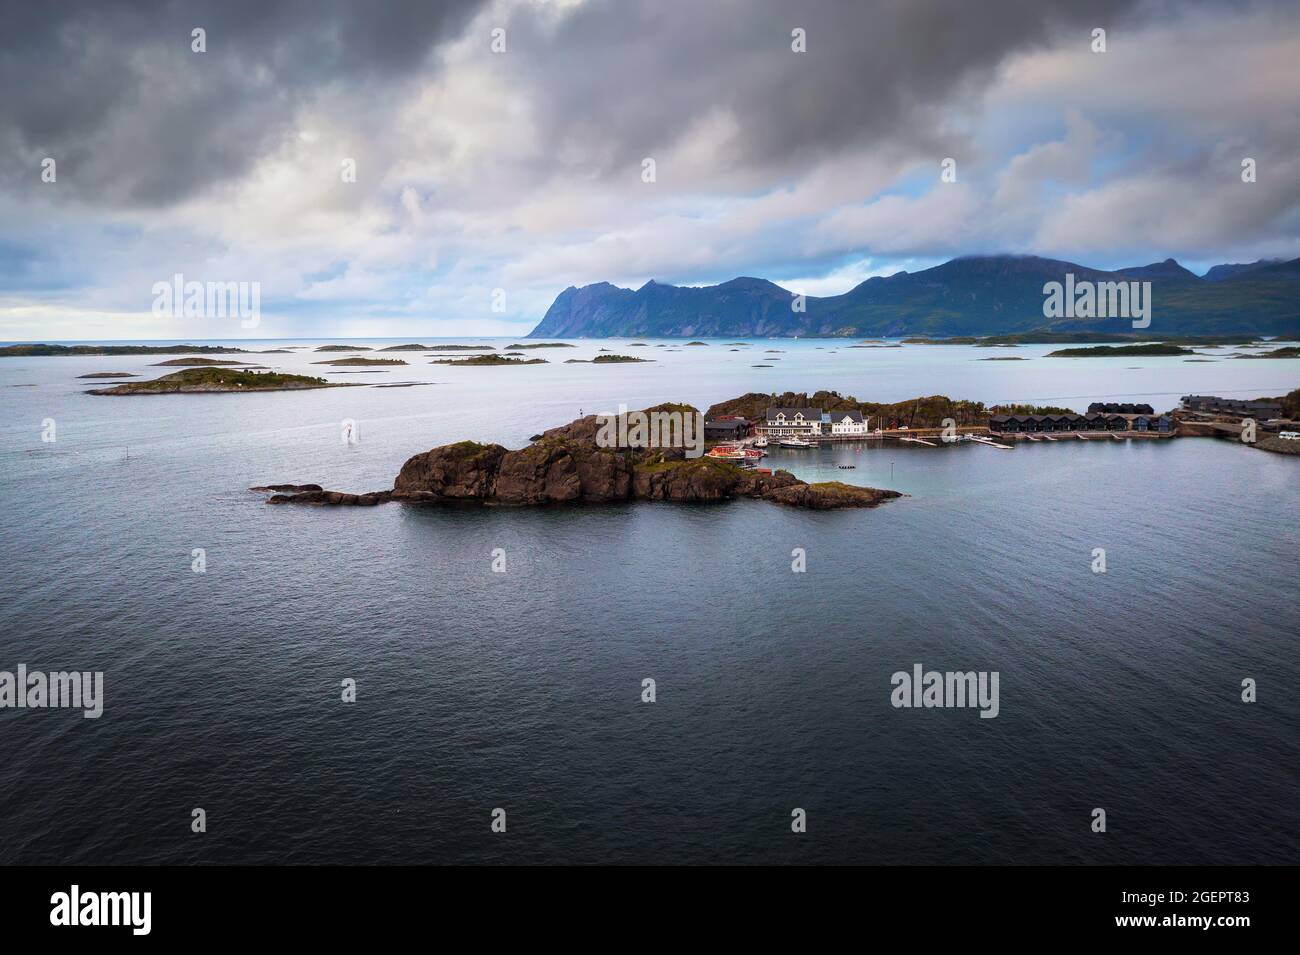 Vue aérienne du village de Hamn i Senja situé sur l'île de Senja en Norvège Banque D'Images